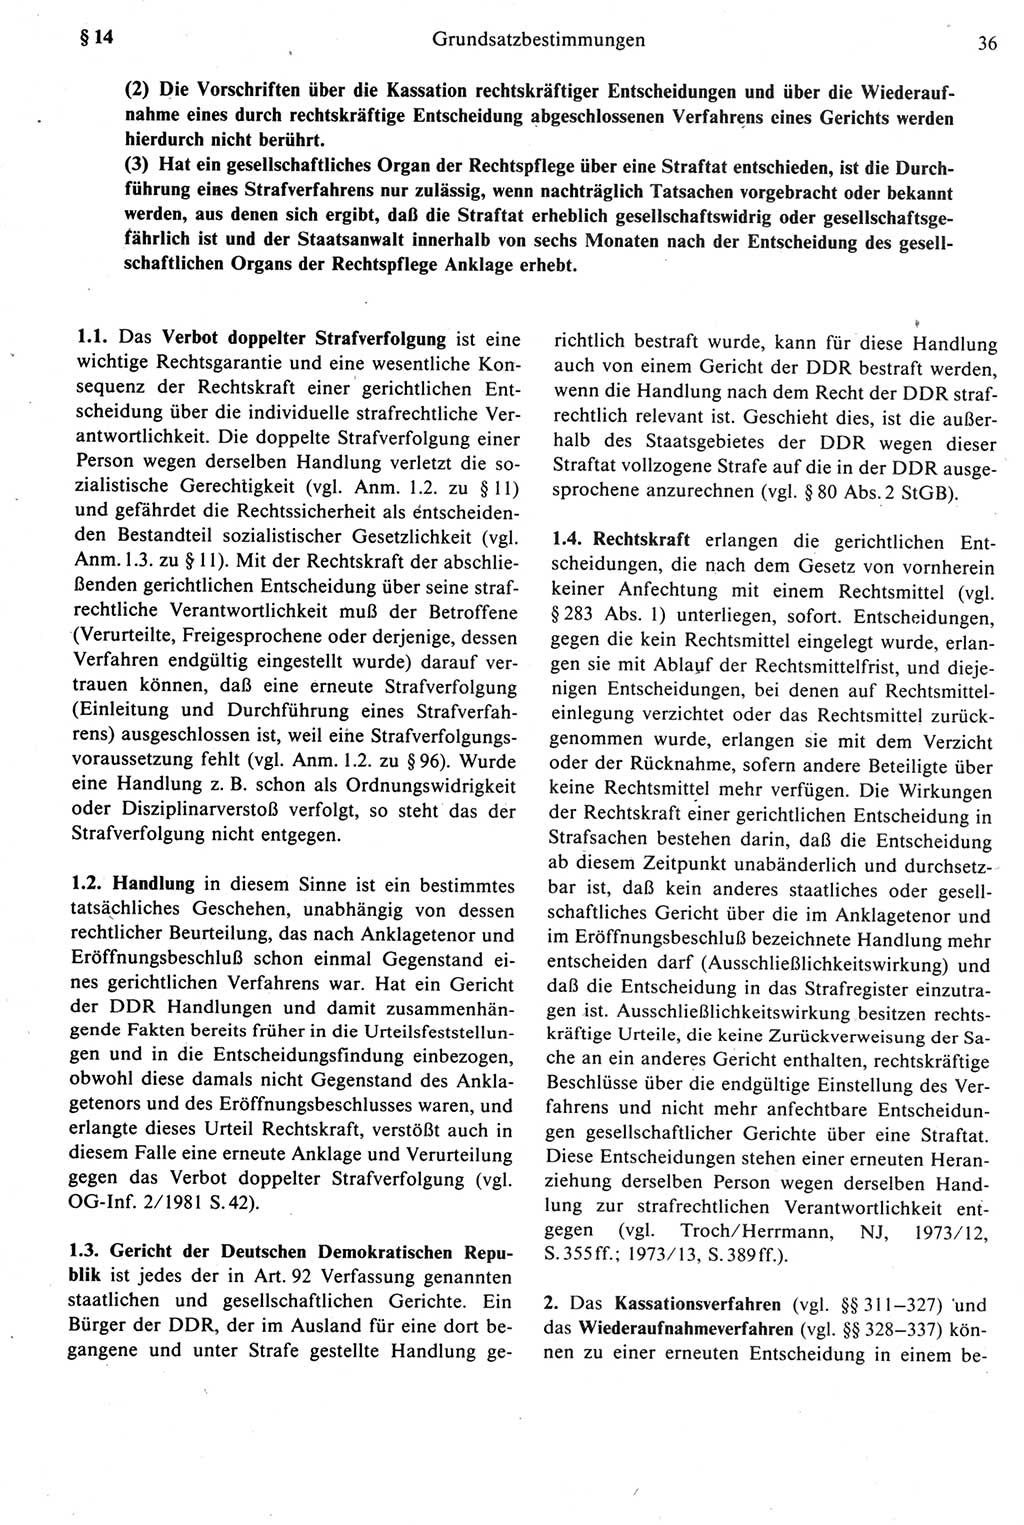 Strafprozeßrecht der DDR [Deutsche Demokratische Republik], Kommentar zur Strafprozeßordnung (StPO) 1987, Seite 36 (Strafprozeßr. DDR Komm. StPO 1987, S. 36)